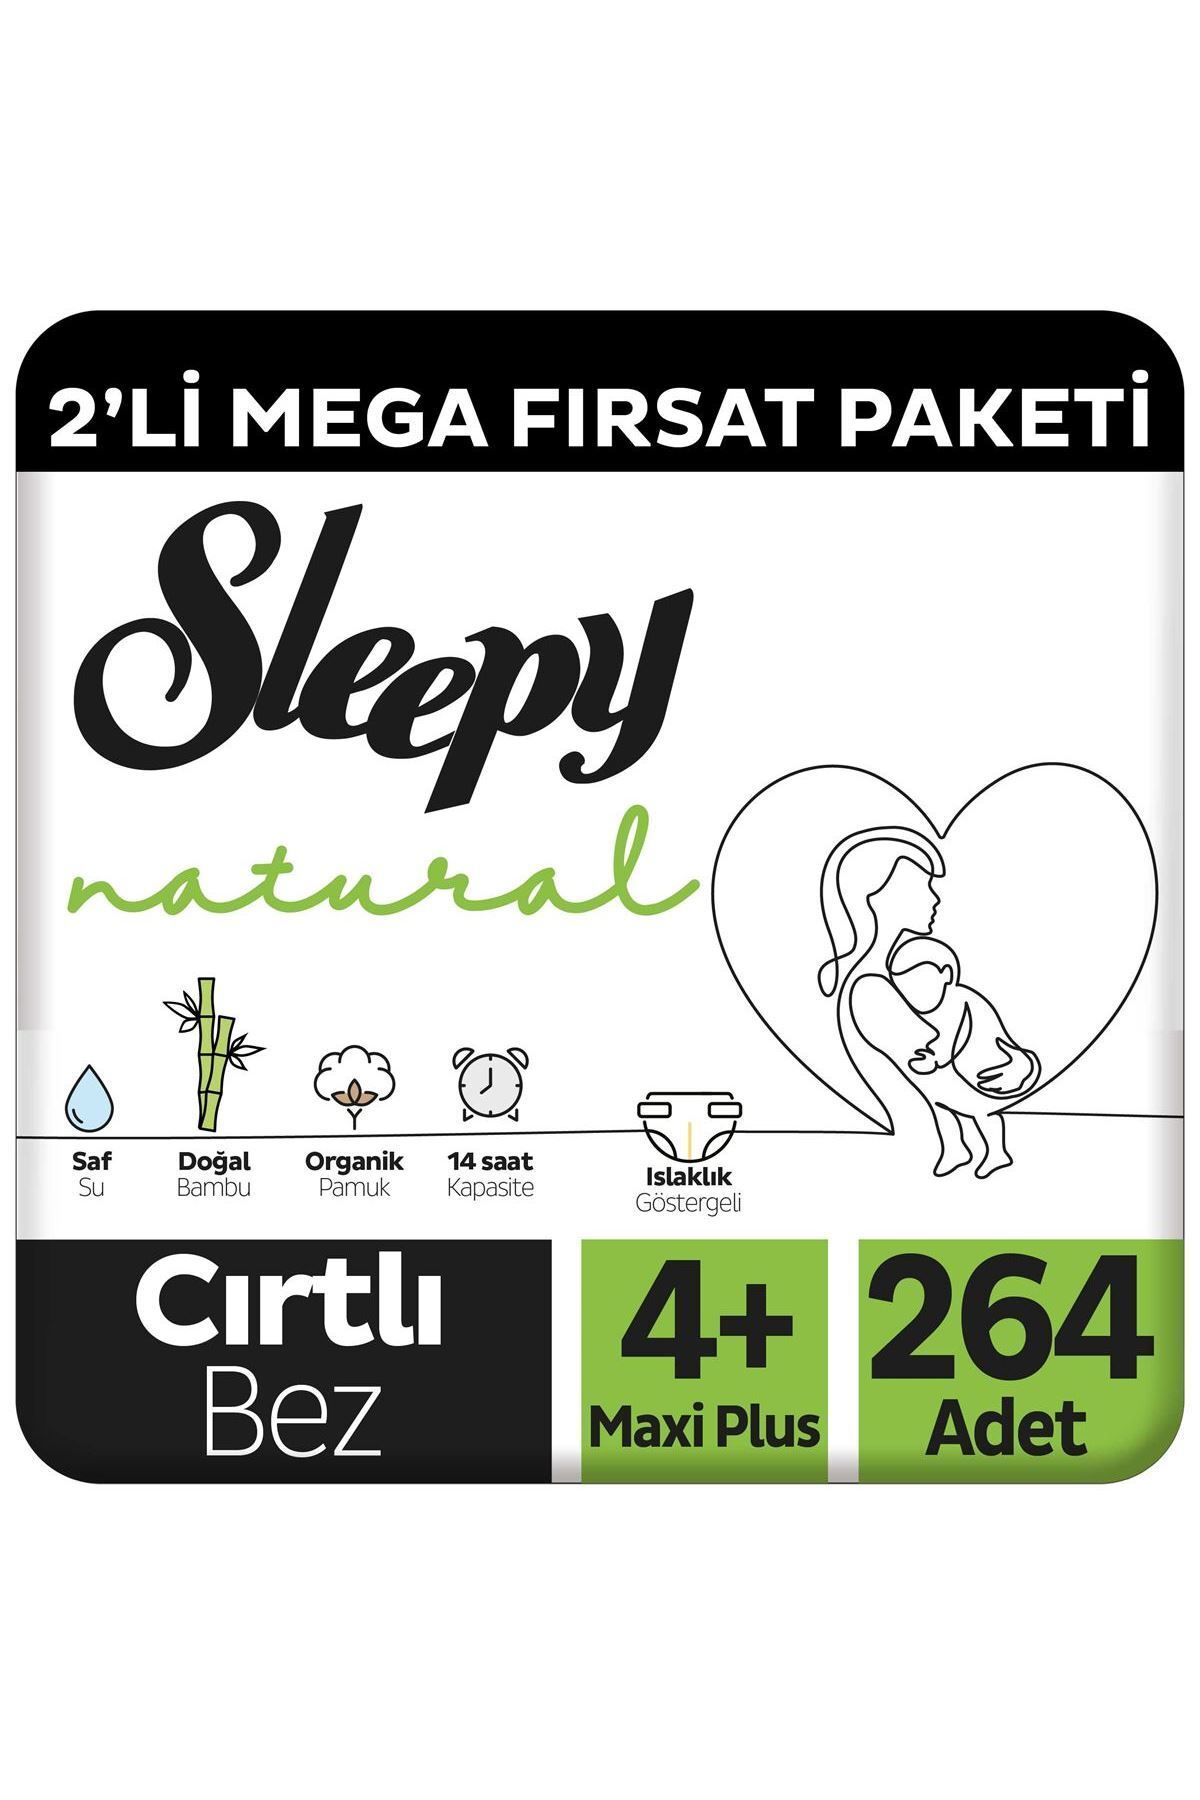 Sleepy Natural 2'Li Mega Fırsat Paketi Bebek Bezi 4+ Numara Maxi Plus 264 Adet